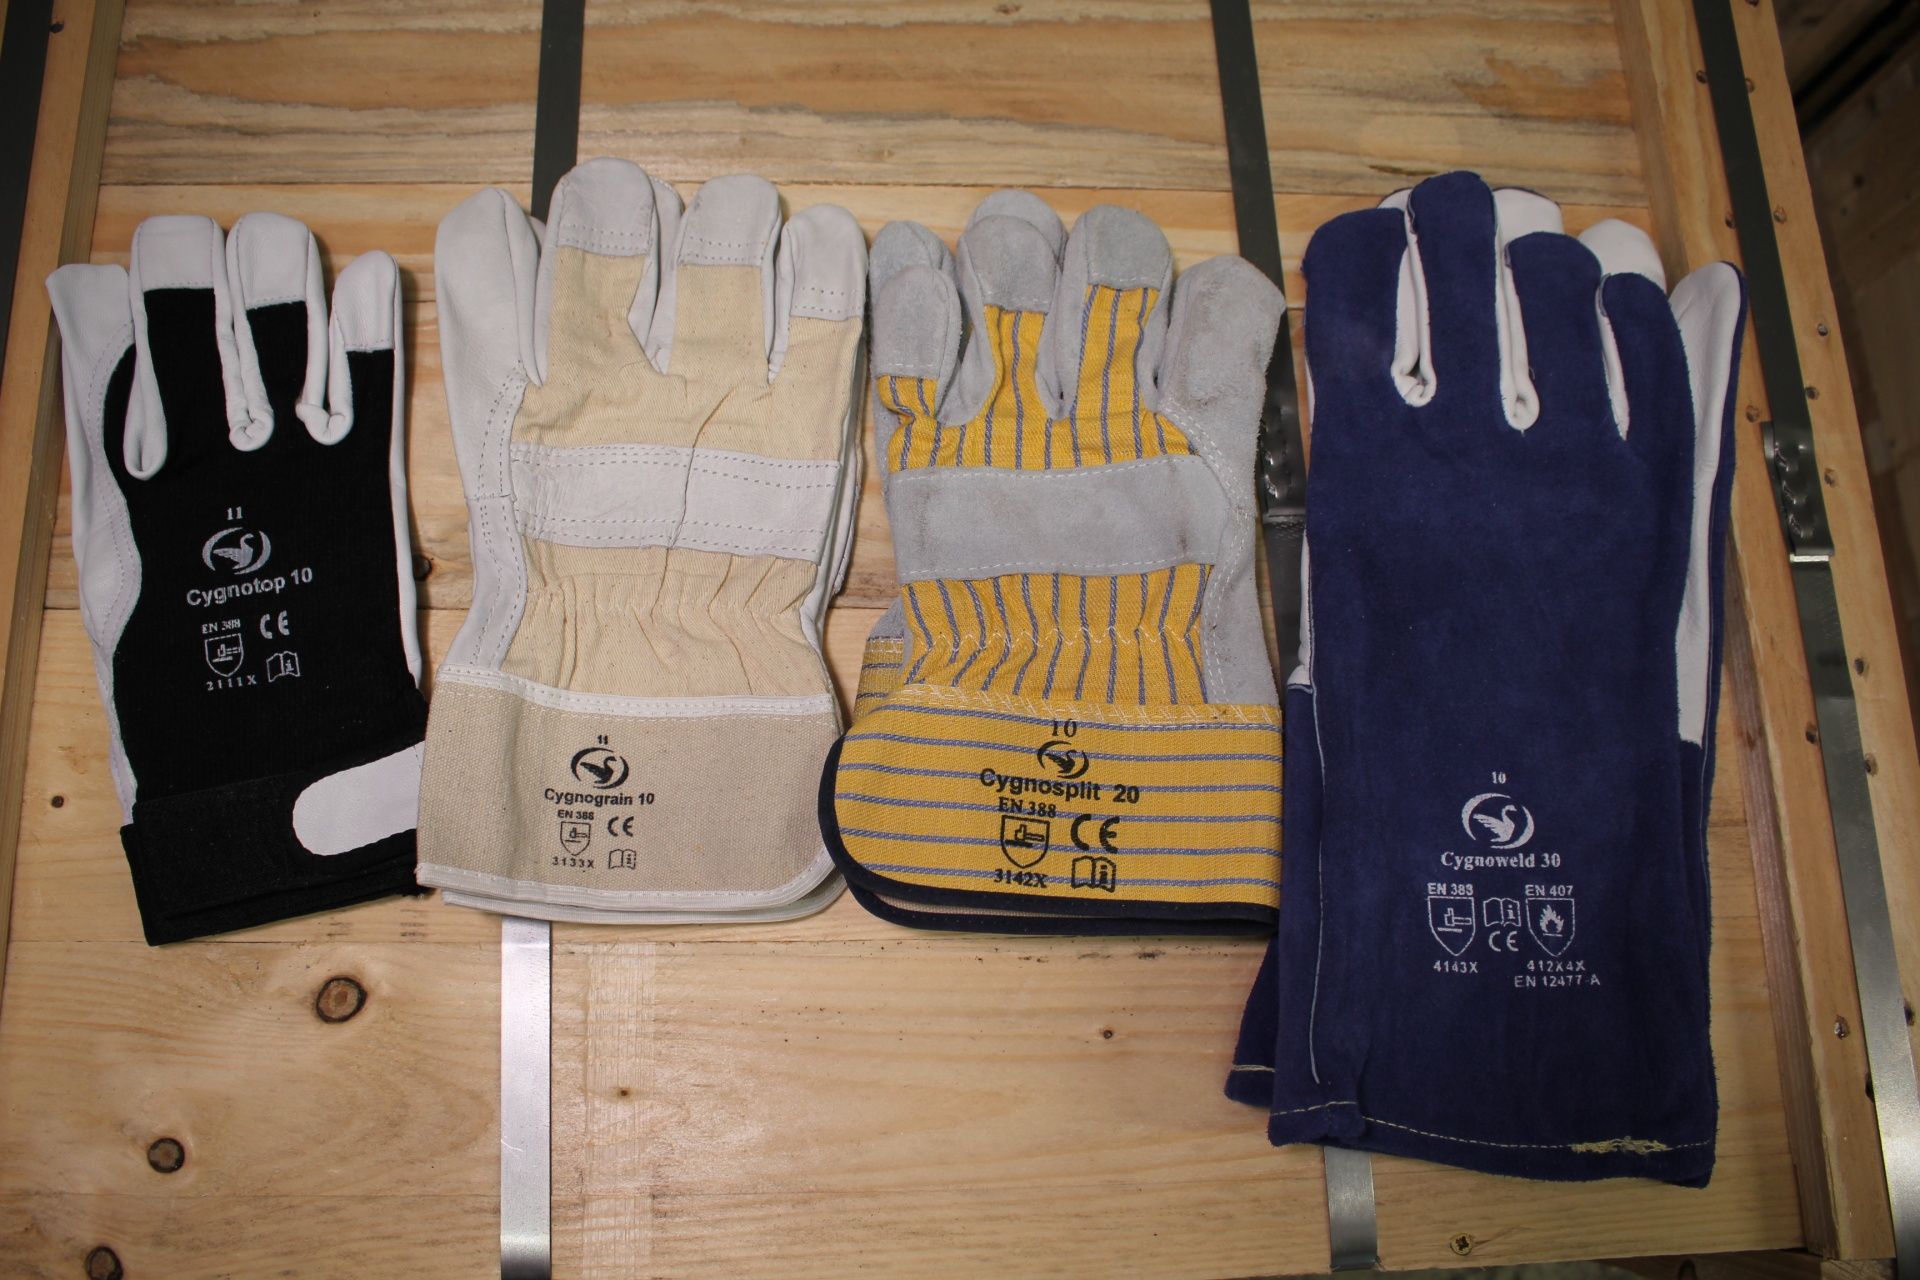 Auswahl an unterschiedlichen Leder-Arbeitshandschuhen, präsentiert auf einer Holzbox. Ziegenleder- und Rindnarben- und Spaltlederhandschuhe